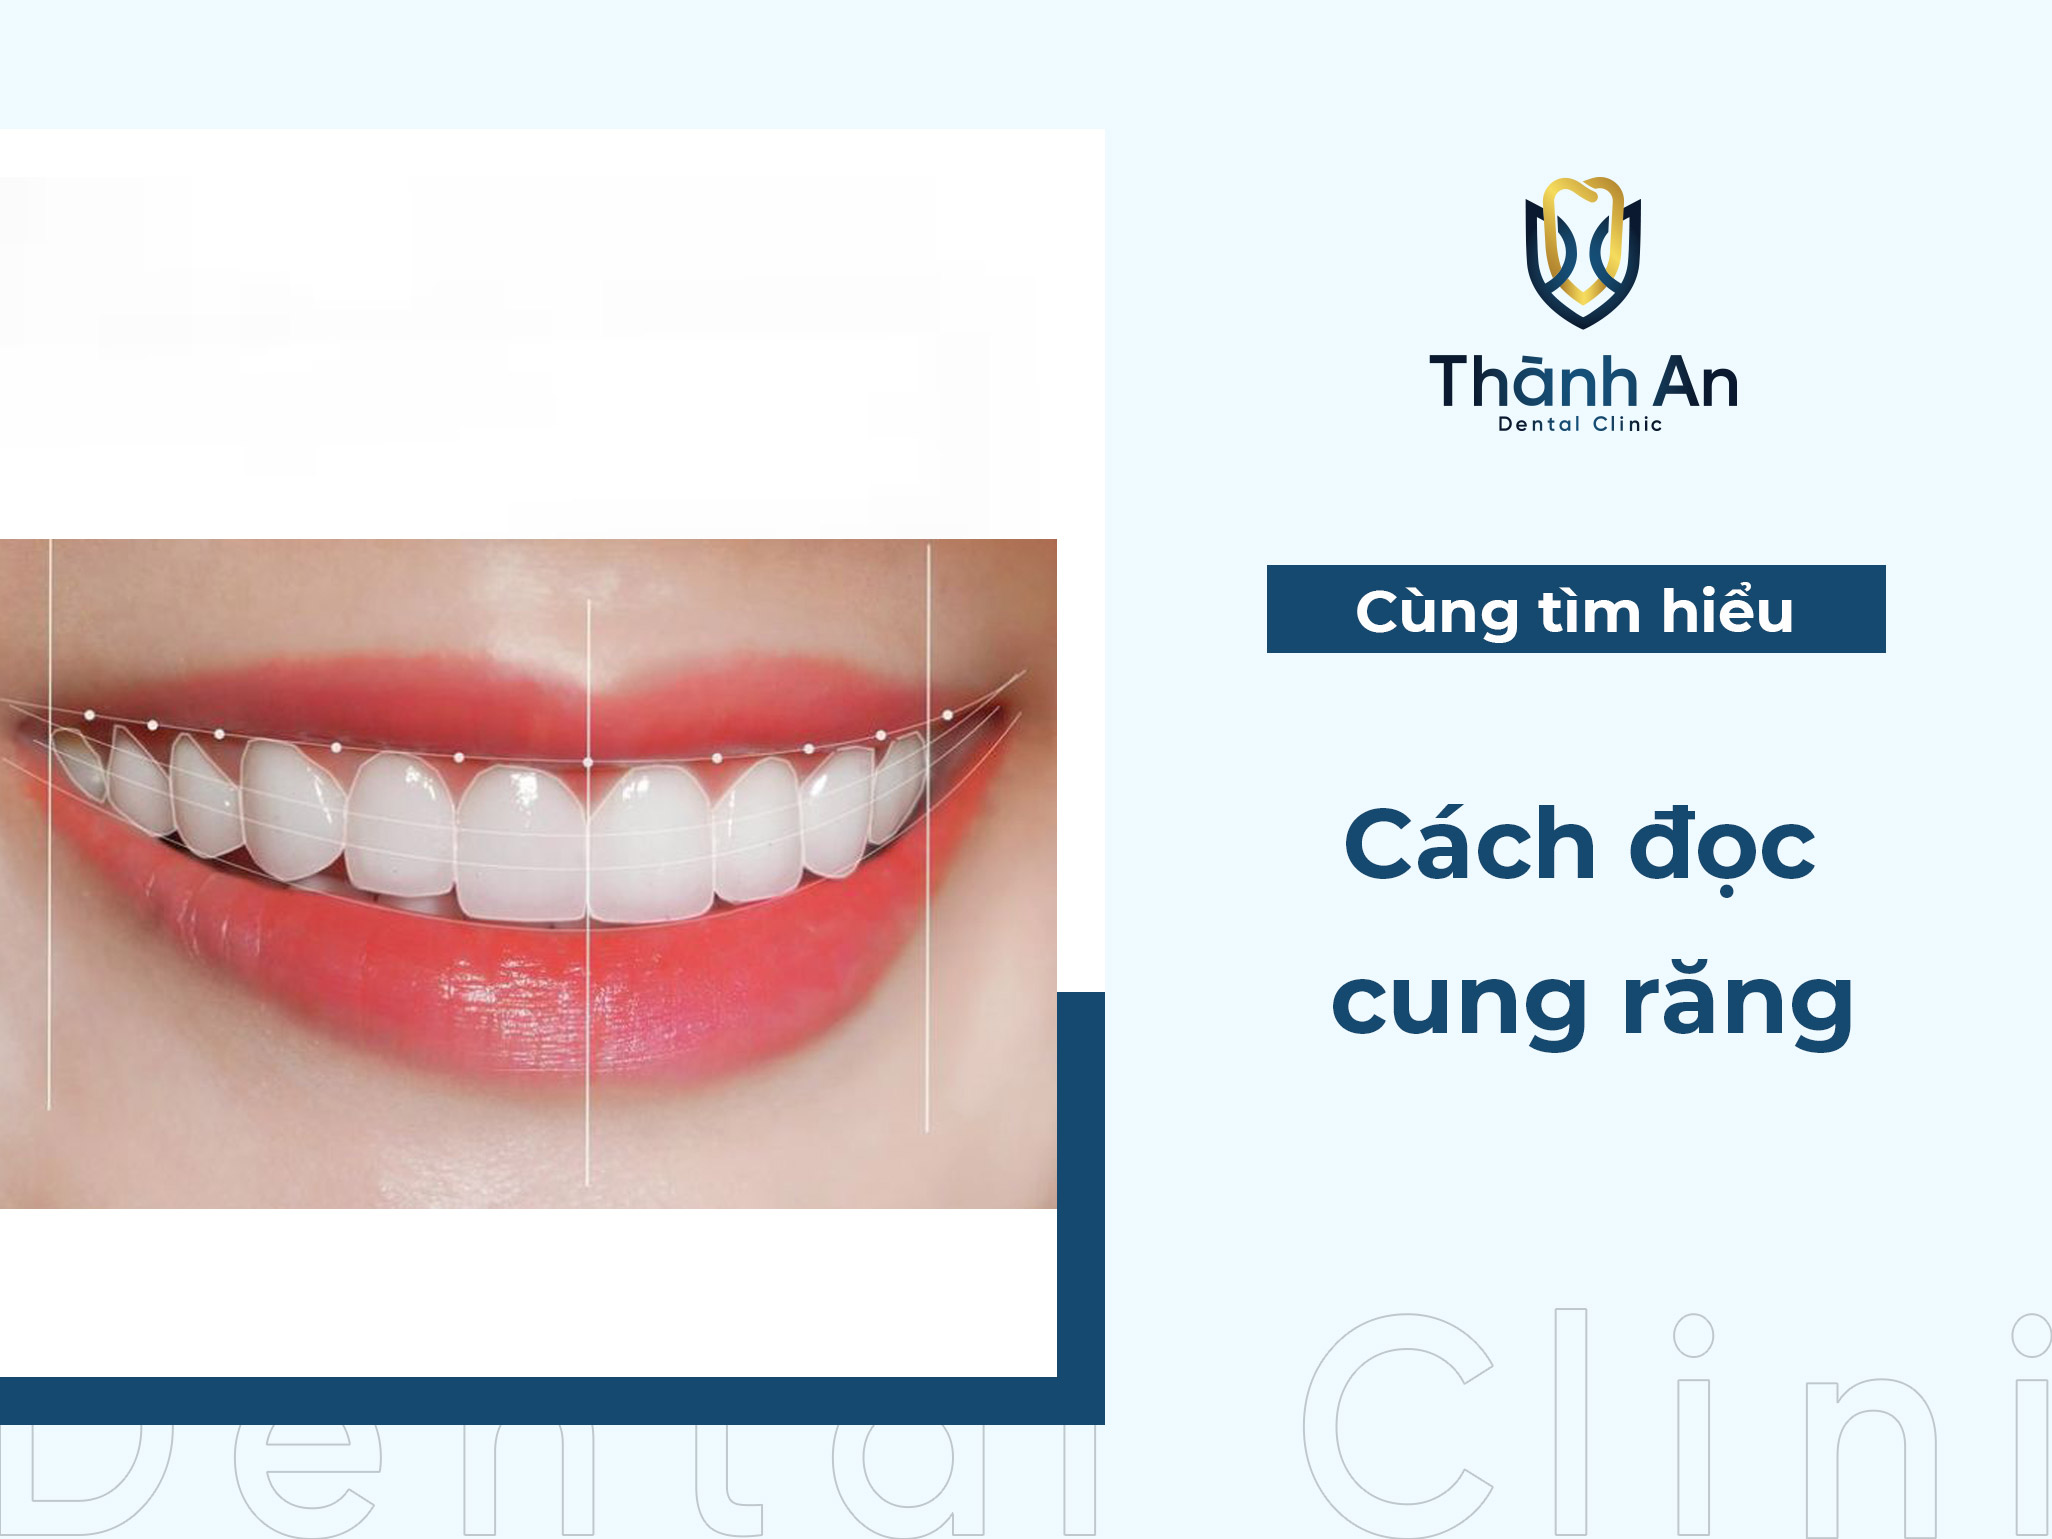 Cung răng là gì? Đặc điểm và cách đọc cung răng chuẩn chi tiết